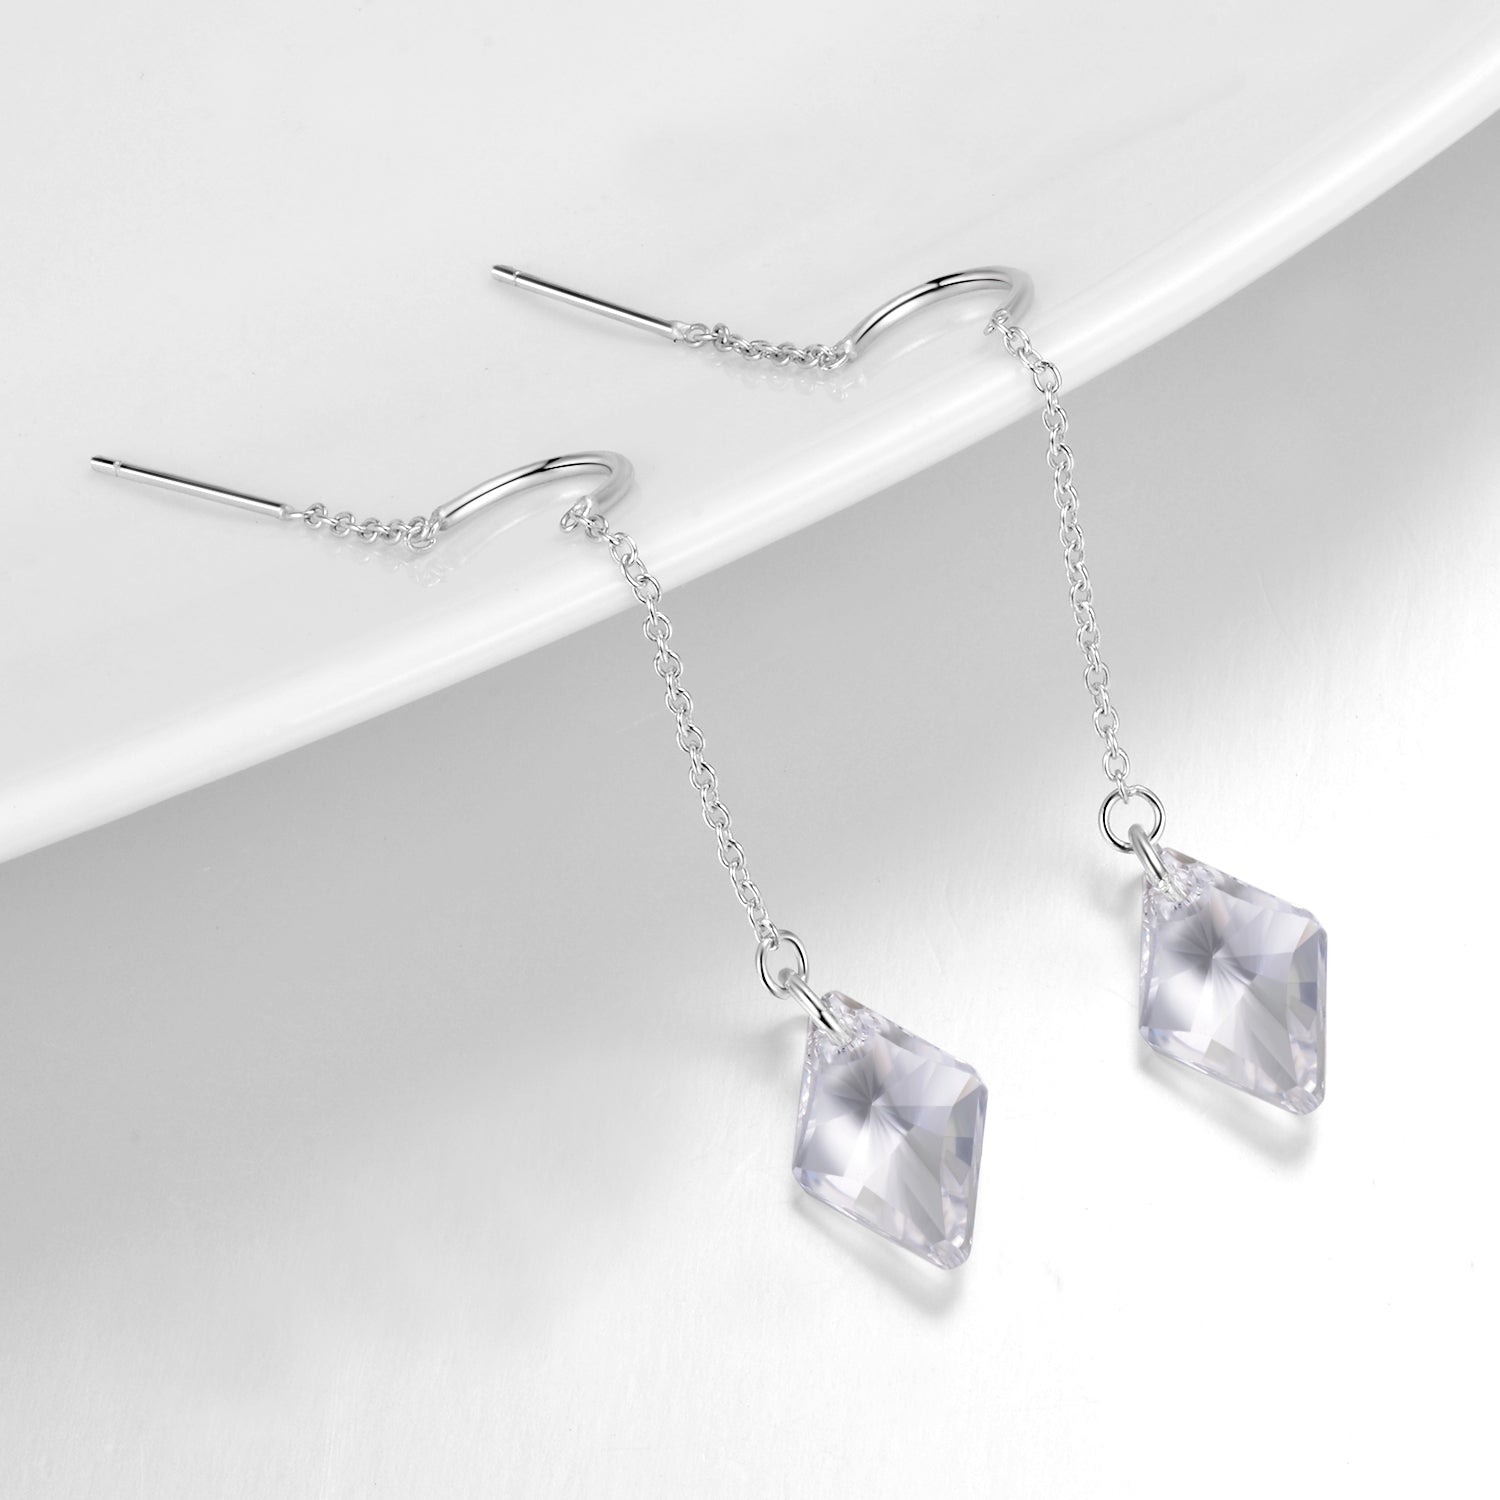 Long Tassel Earring with Gemstone Silver Wire Women Party Earrings